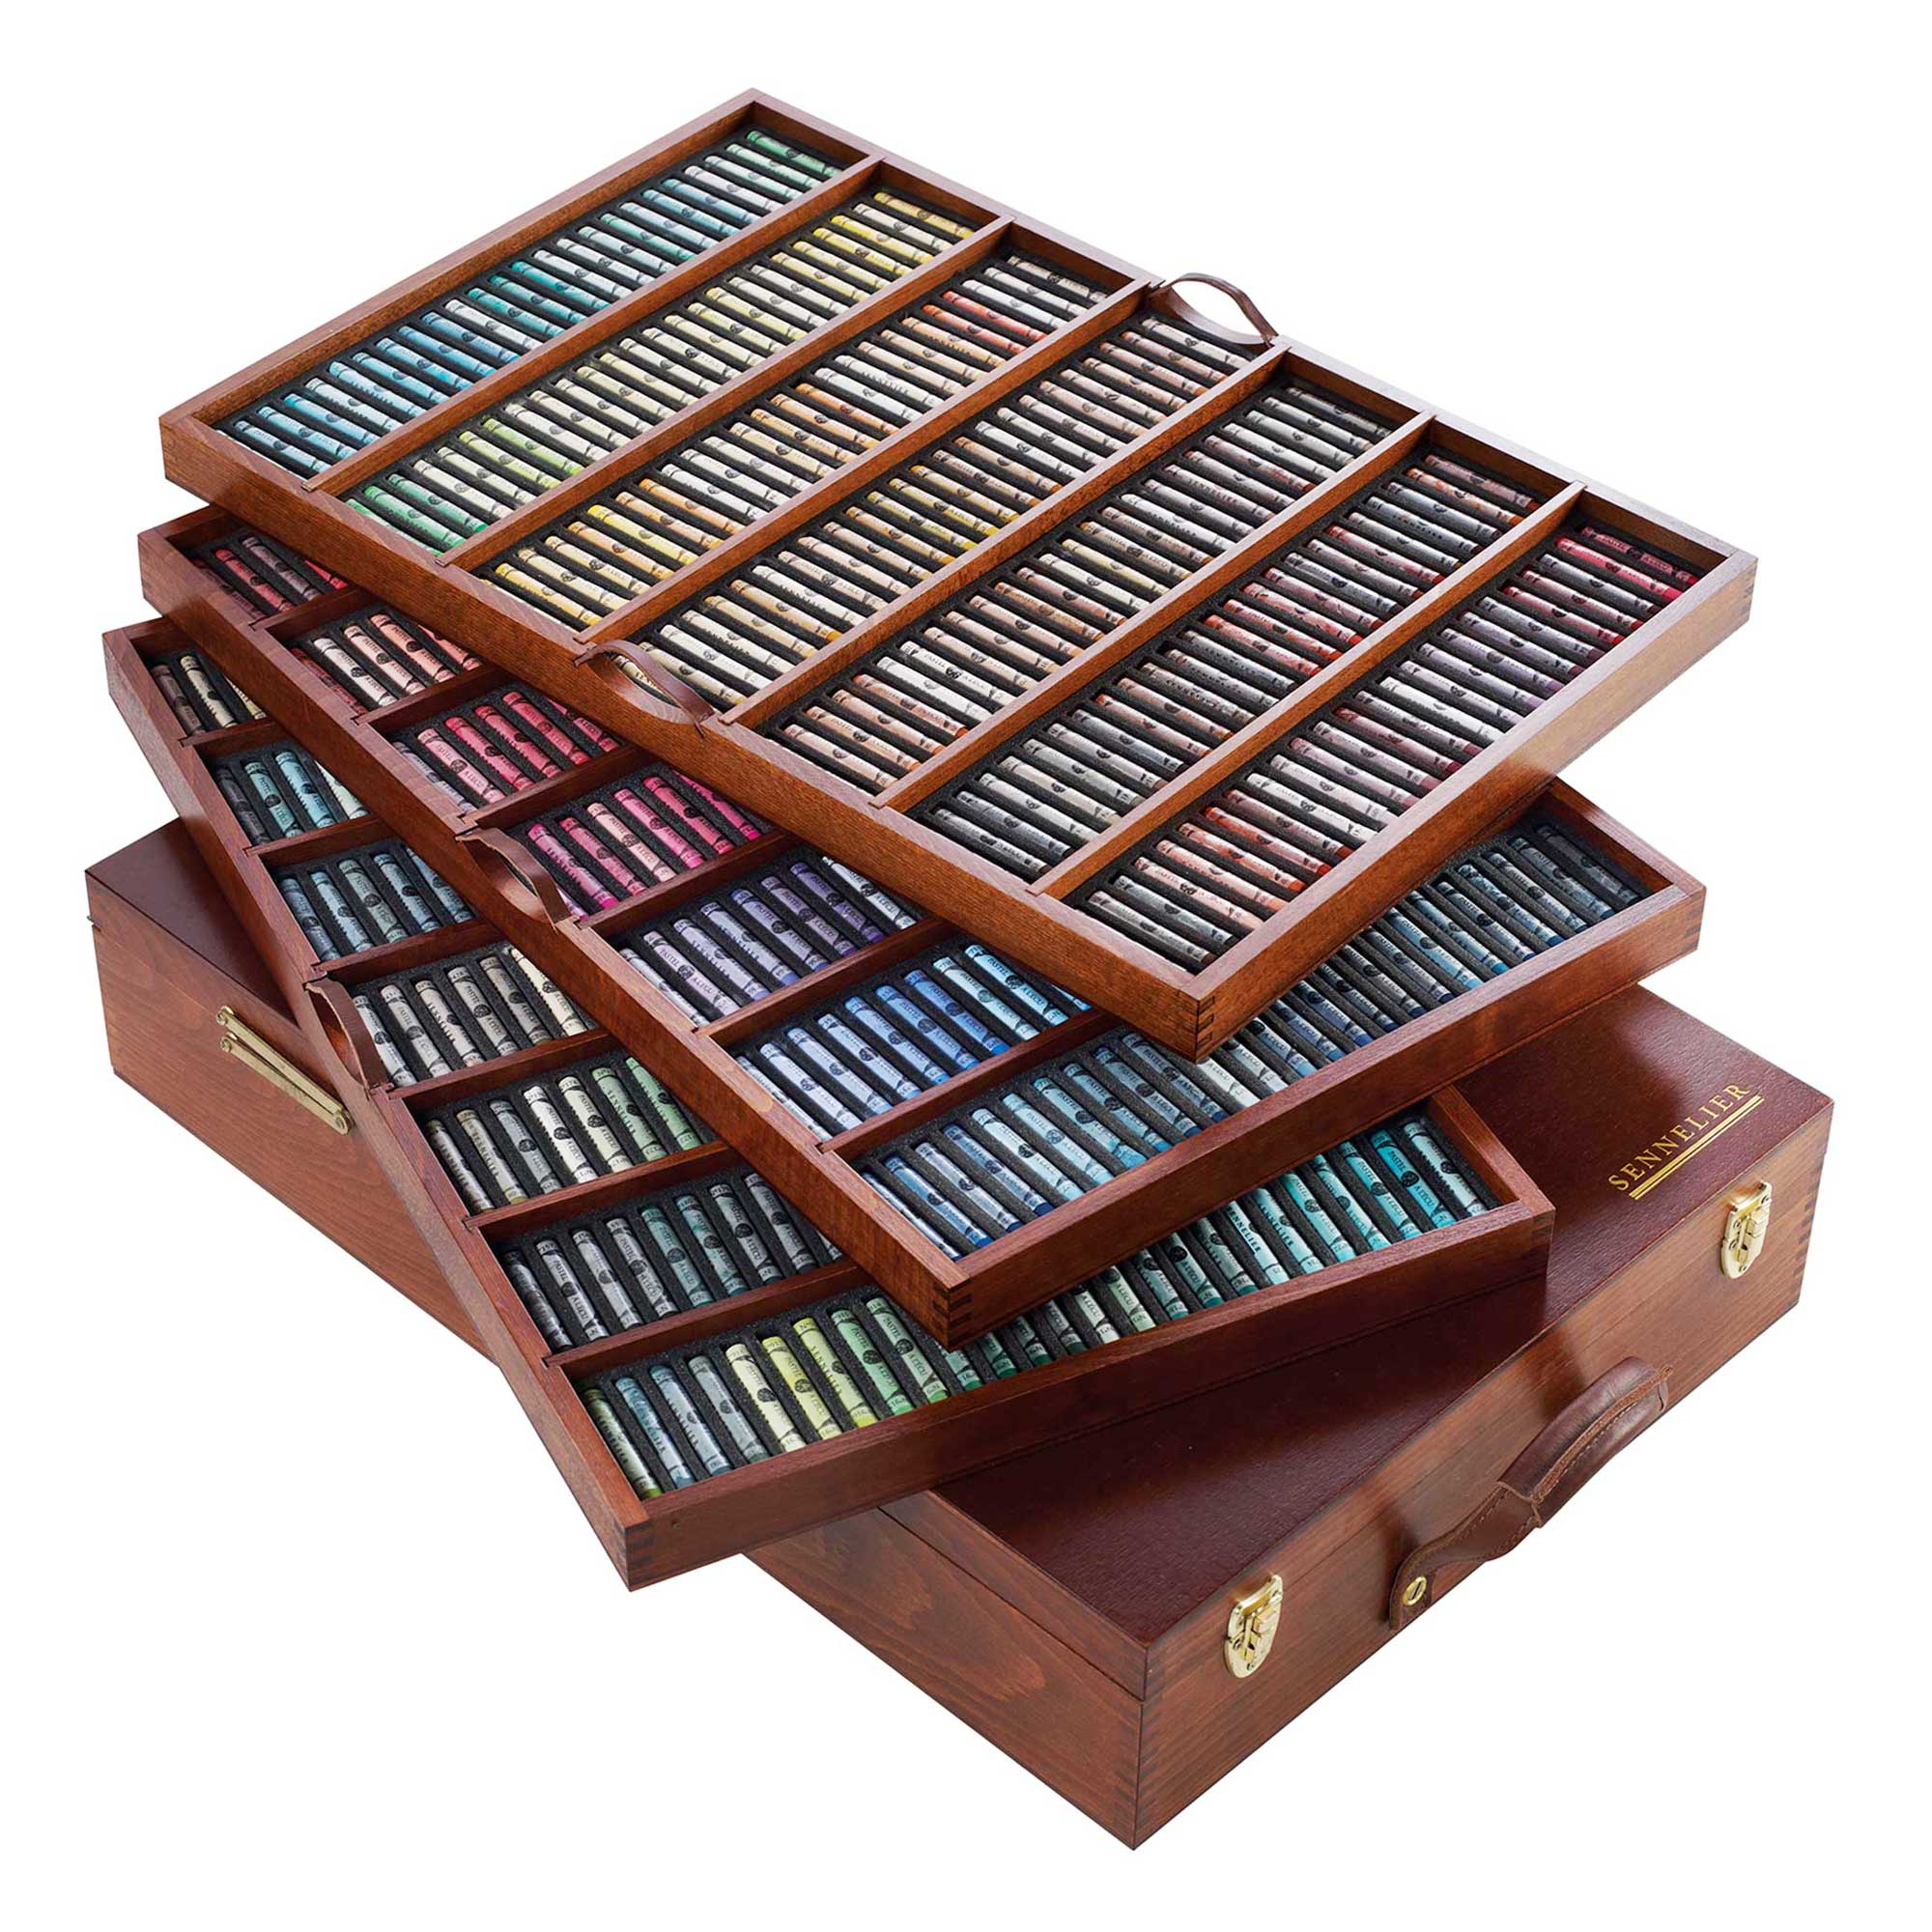 Sennelier Extra Soft Pastels Wooden Case - King Set of 525 Pastels